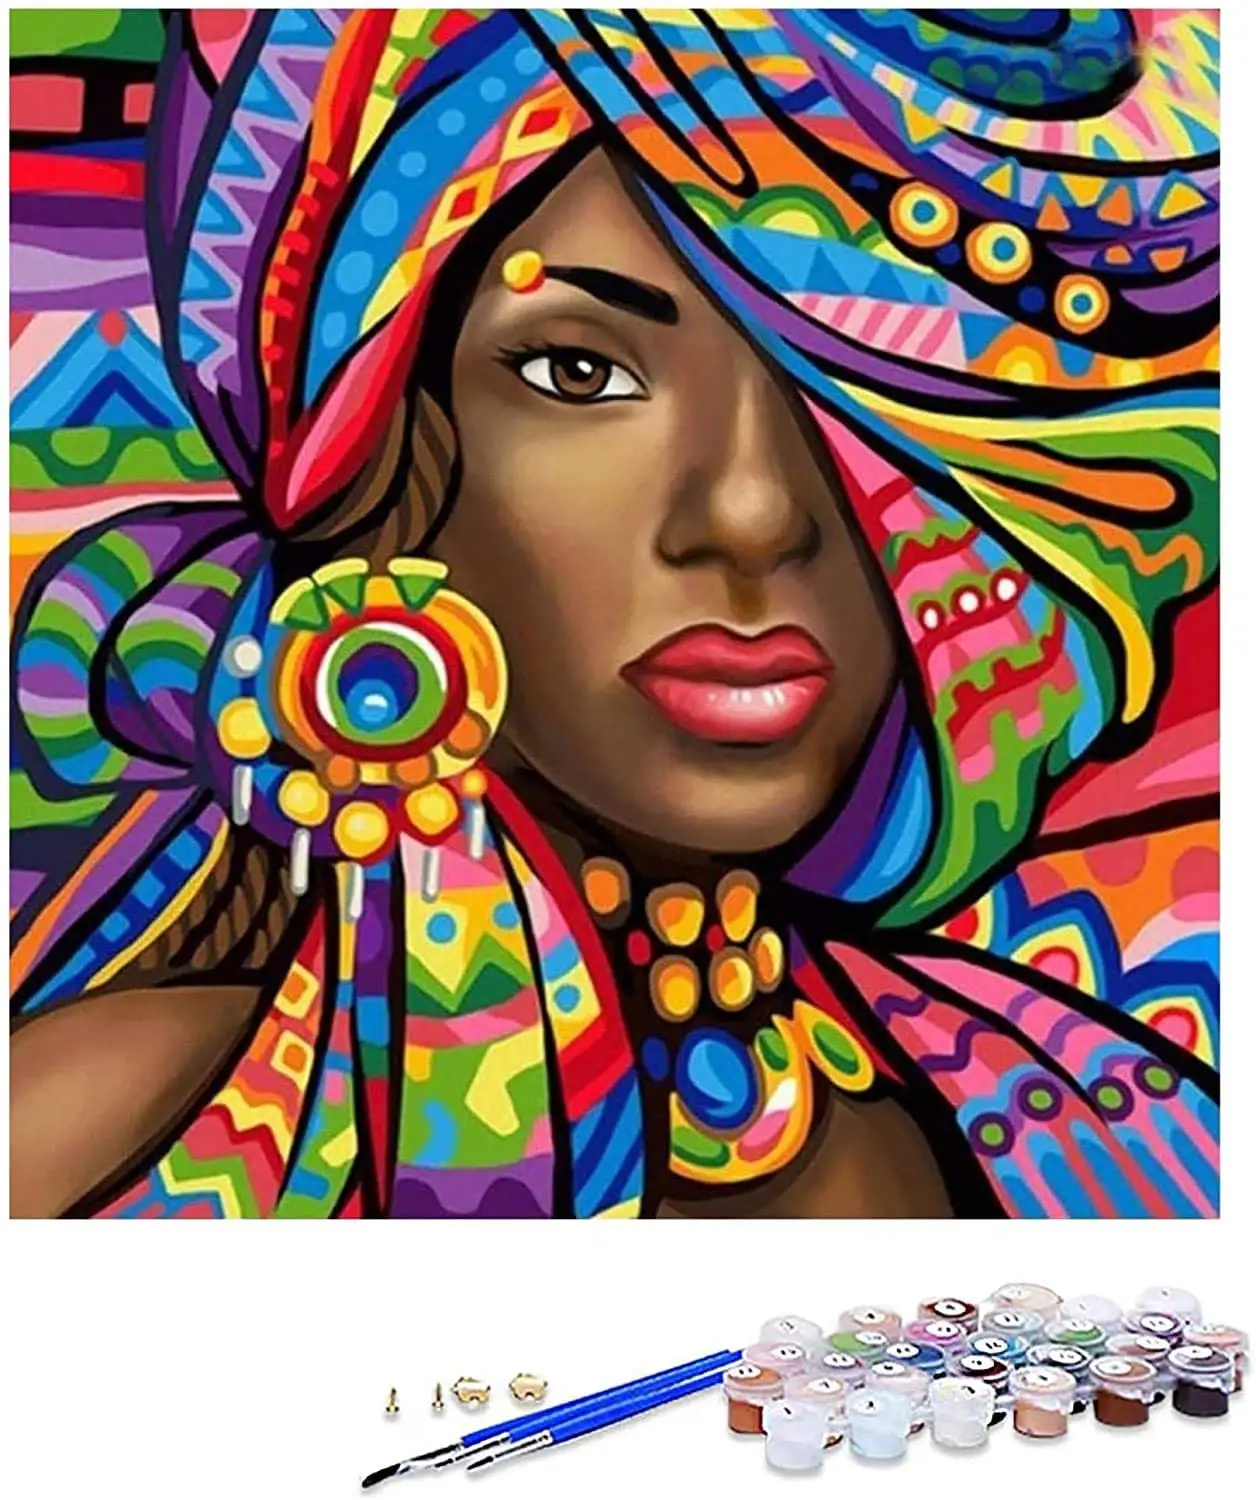 वयस्कों के लिए हॉट डिज़ाइन ऐक्रेलिक पेंट, घर की दीवार की सजावट के लिए अफ़्रीकी अमेरिकी कैनवास पेंटिंग 16x20 इंच